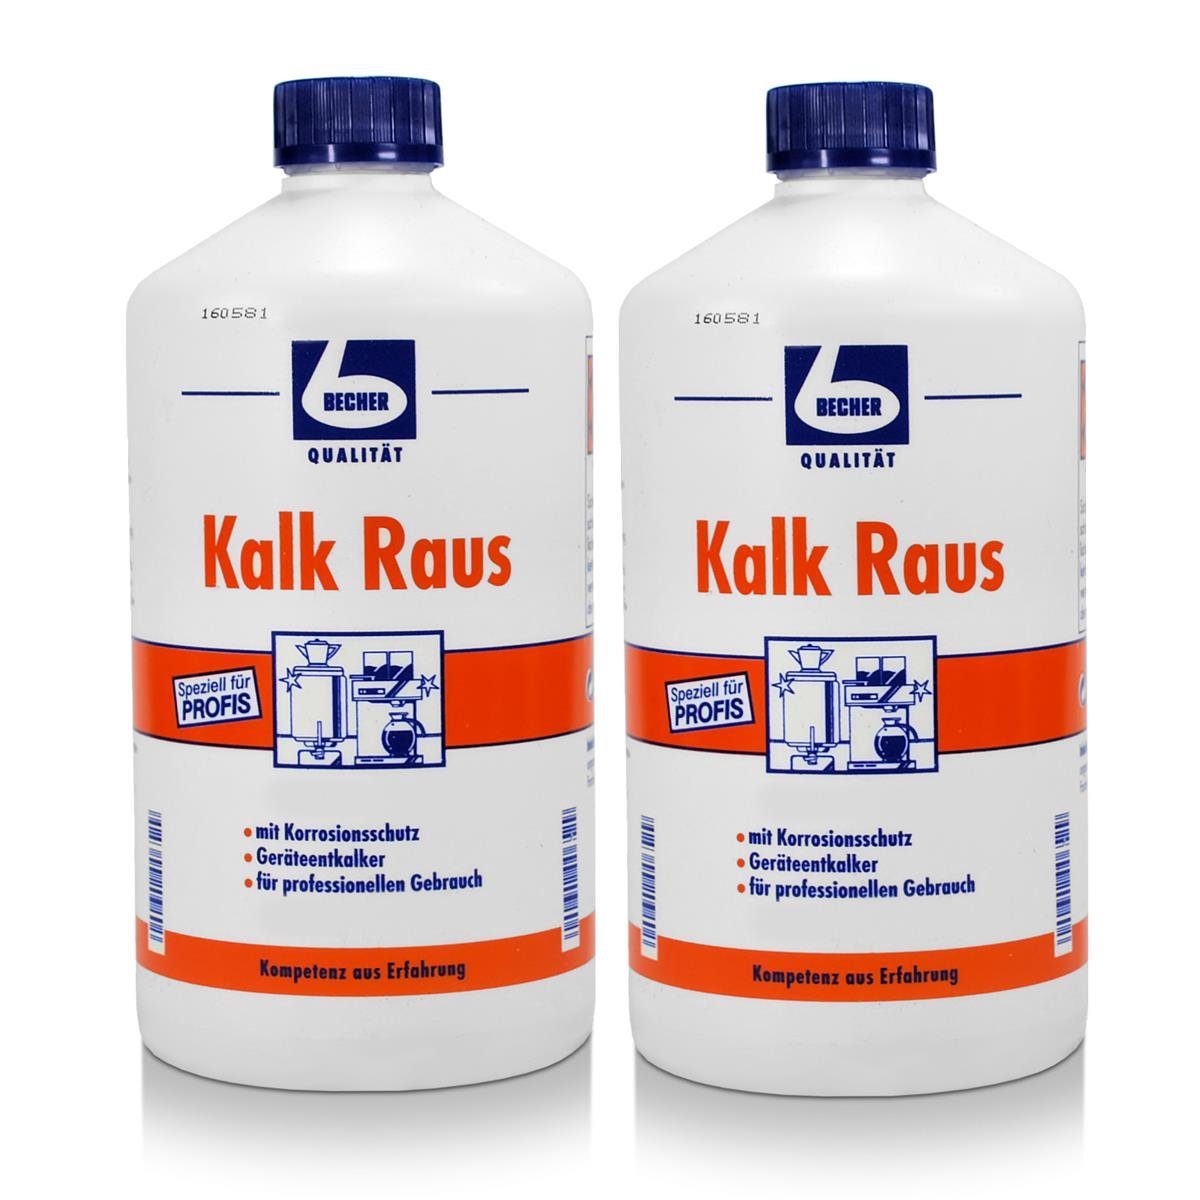 1 2x Becher Kalk Liter Dr. Geräteentkalker Becher Dr. Raus Spezialwaschmittel